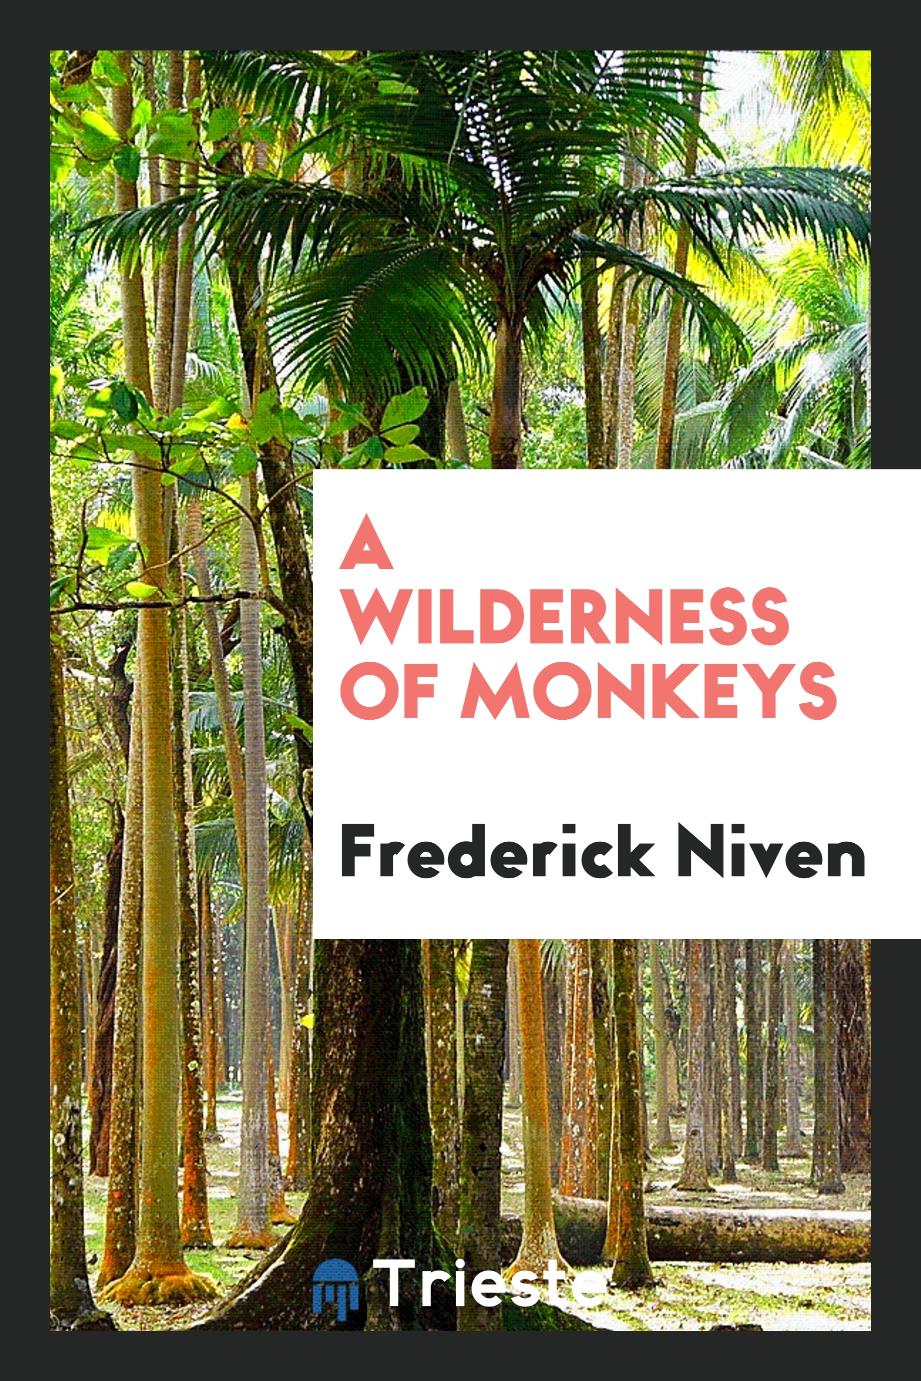 A wilderness of monkeys